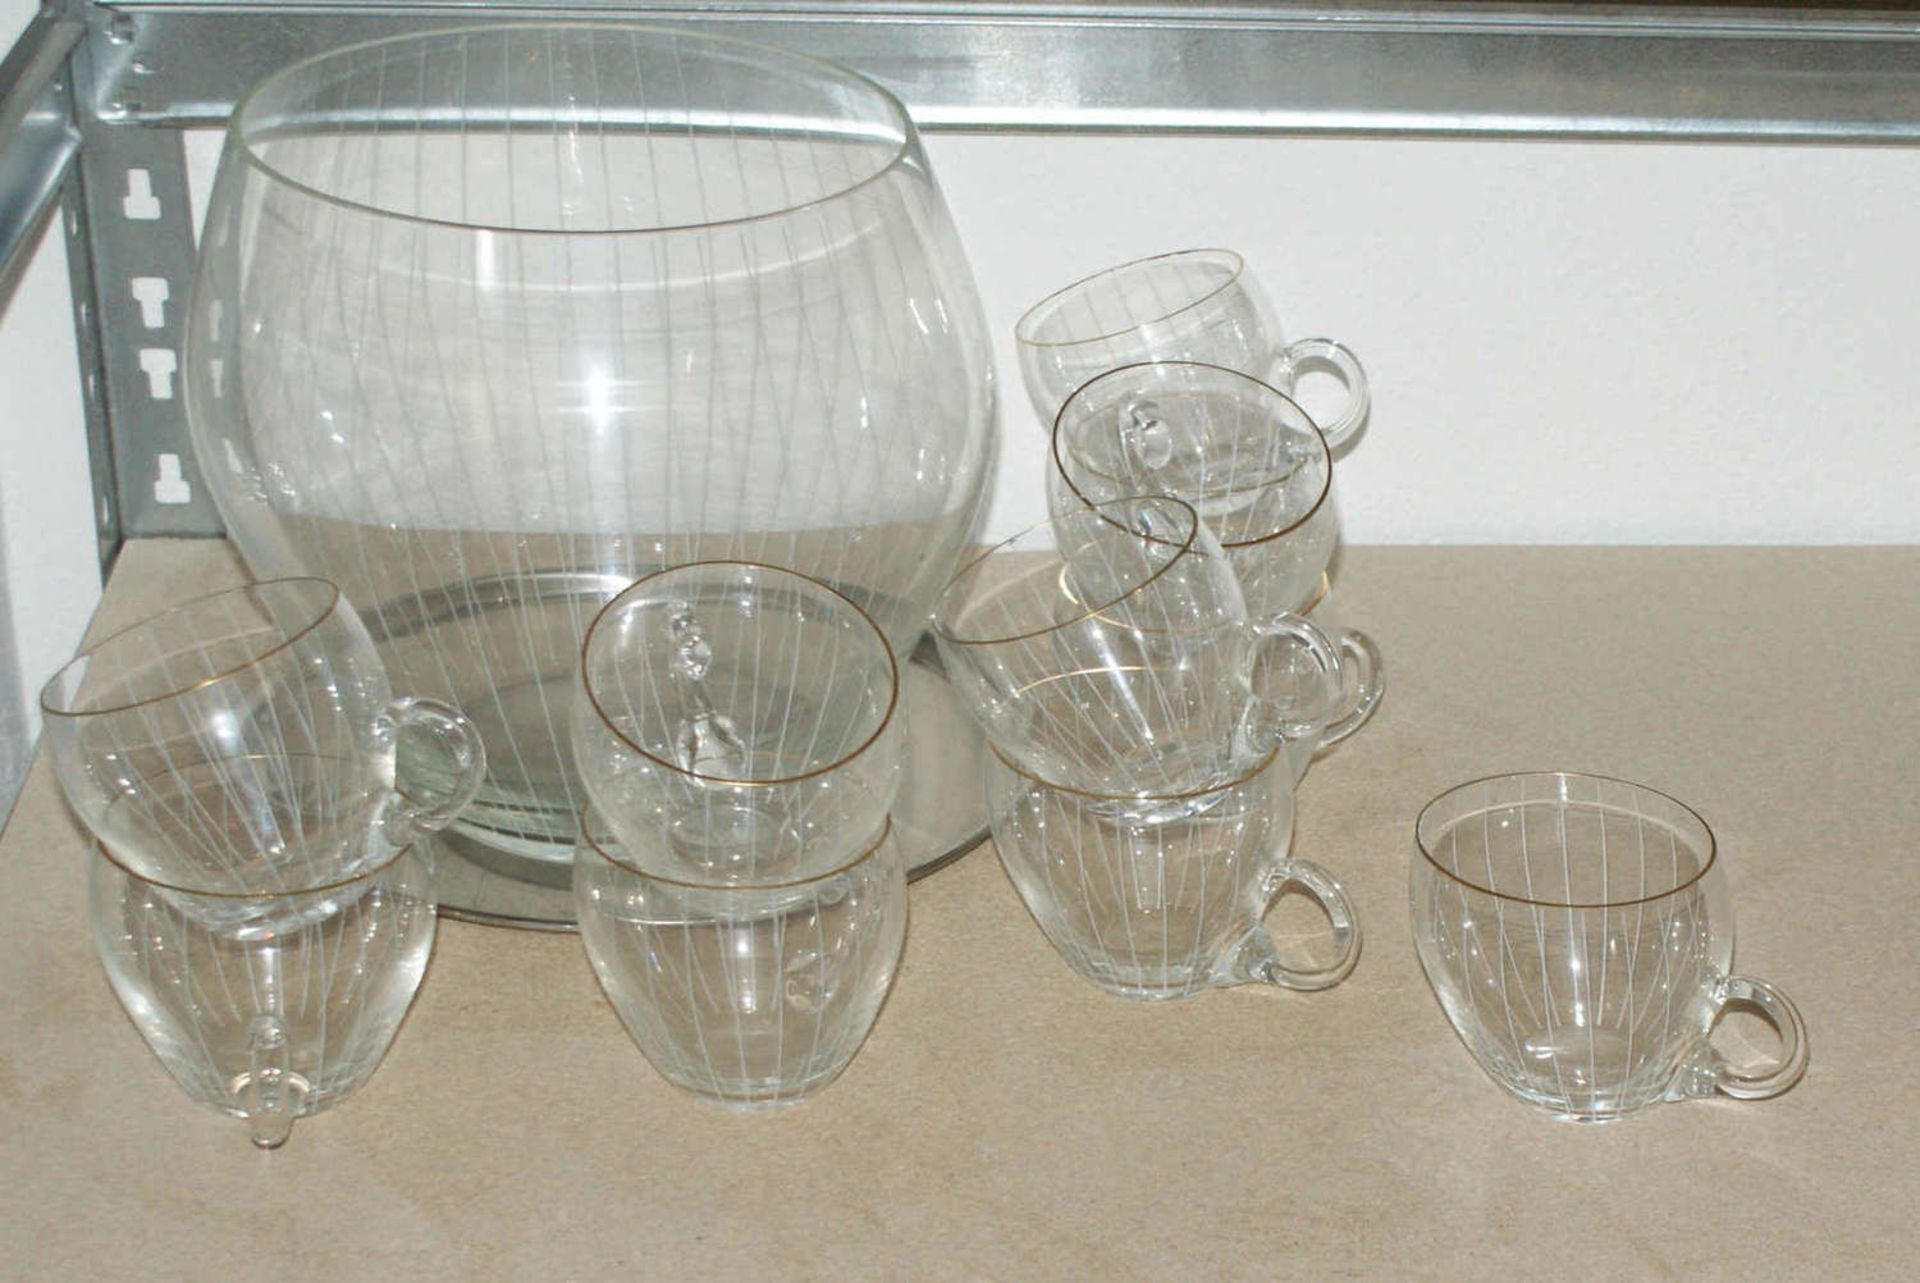 Bowleservice aus Glas, 50-60er Jahre, bestehend aus 1 Bowlegefäß ohne Deckel, 11 Bowle Gläser.